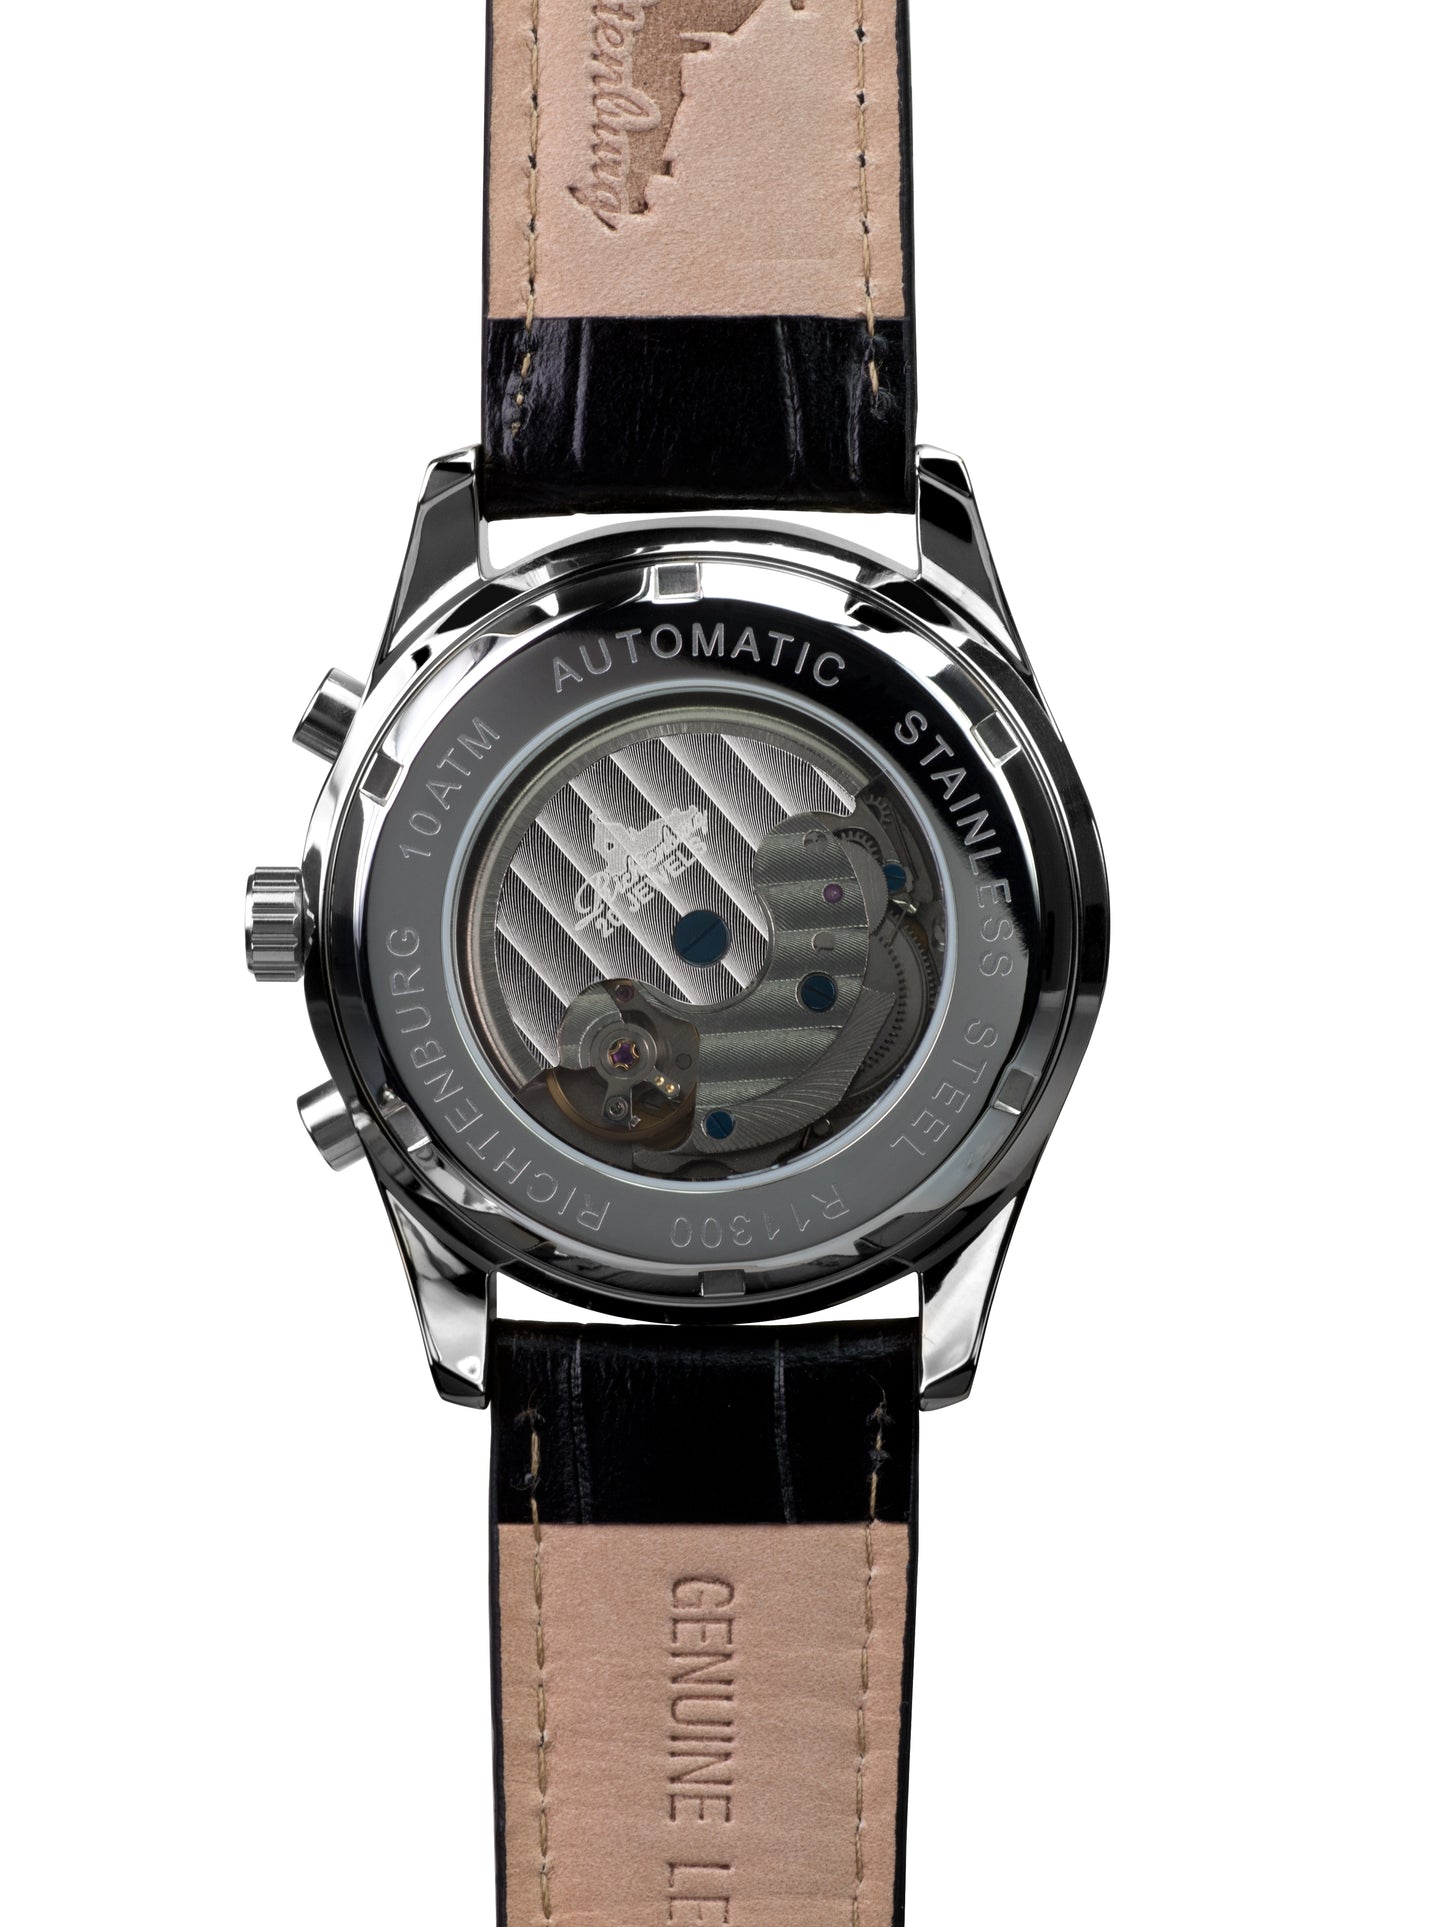 Automatic watches — Athen — Richtenburg — black